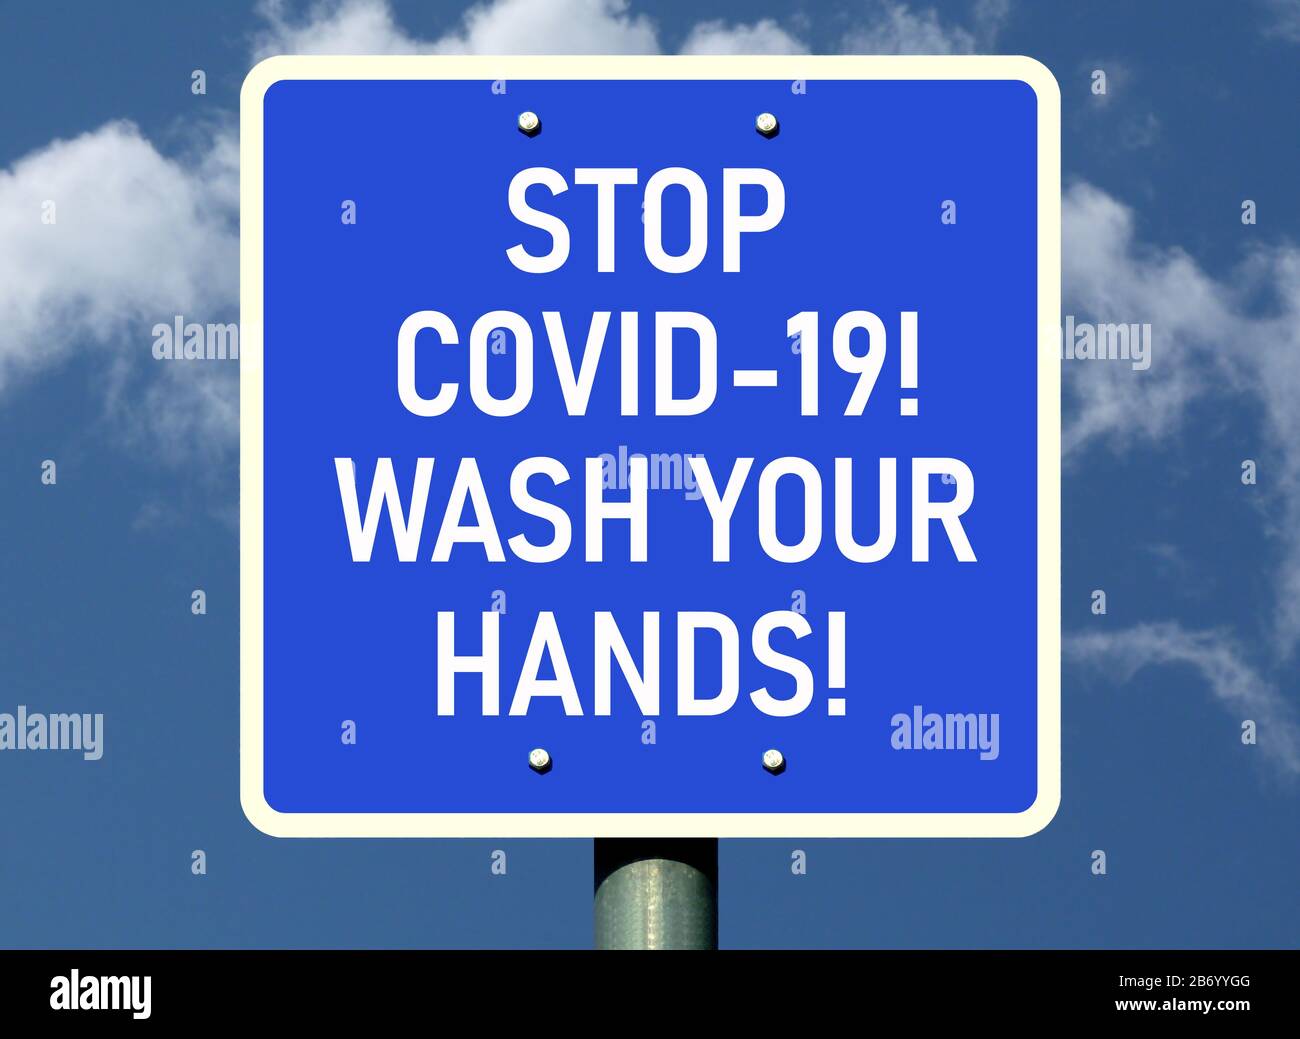 Blaues Schild und Etikett zur Vermeidung von COVID-19. Waschen Sie Ihre Hände zur Erinnerung. Infektionskrankheit. Warnkonzept für Virusgefahr. Anderer Name Coronavirus. Blauer Himmel. Stockfoto